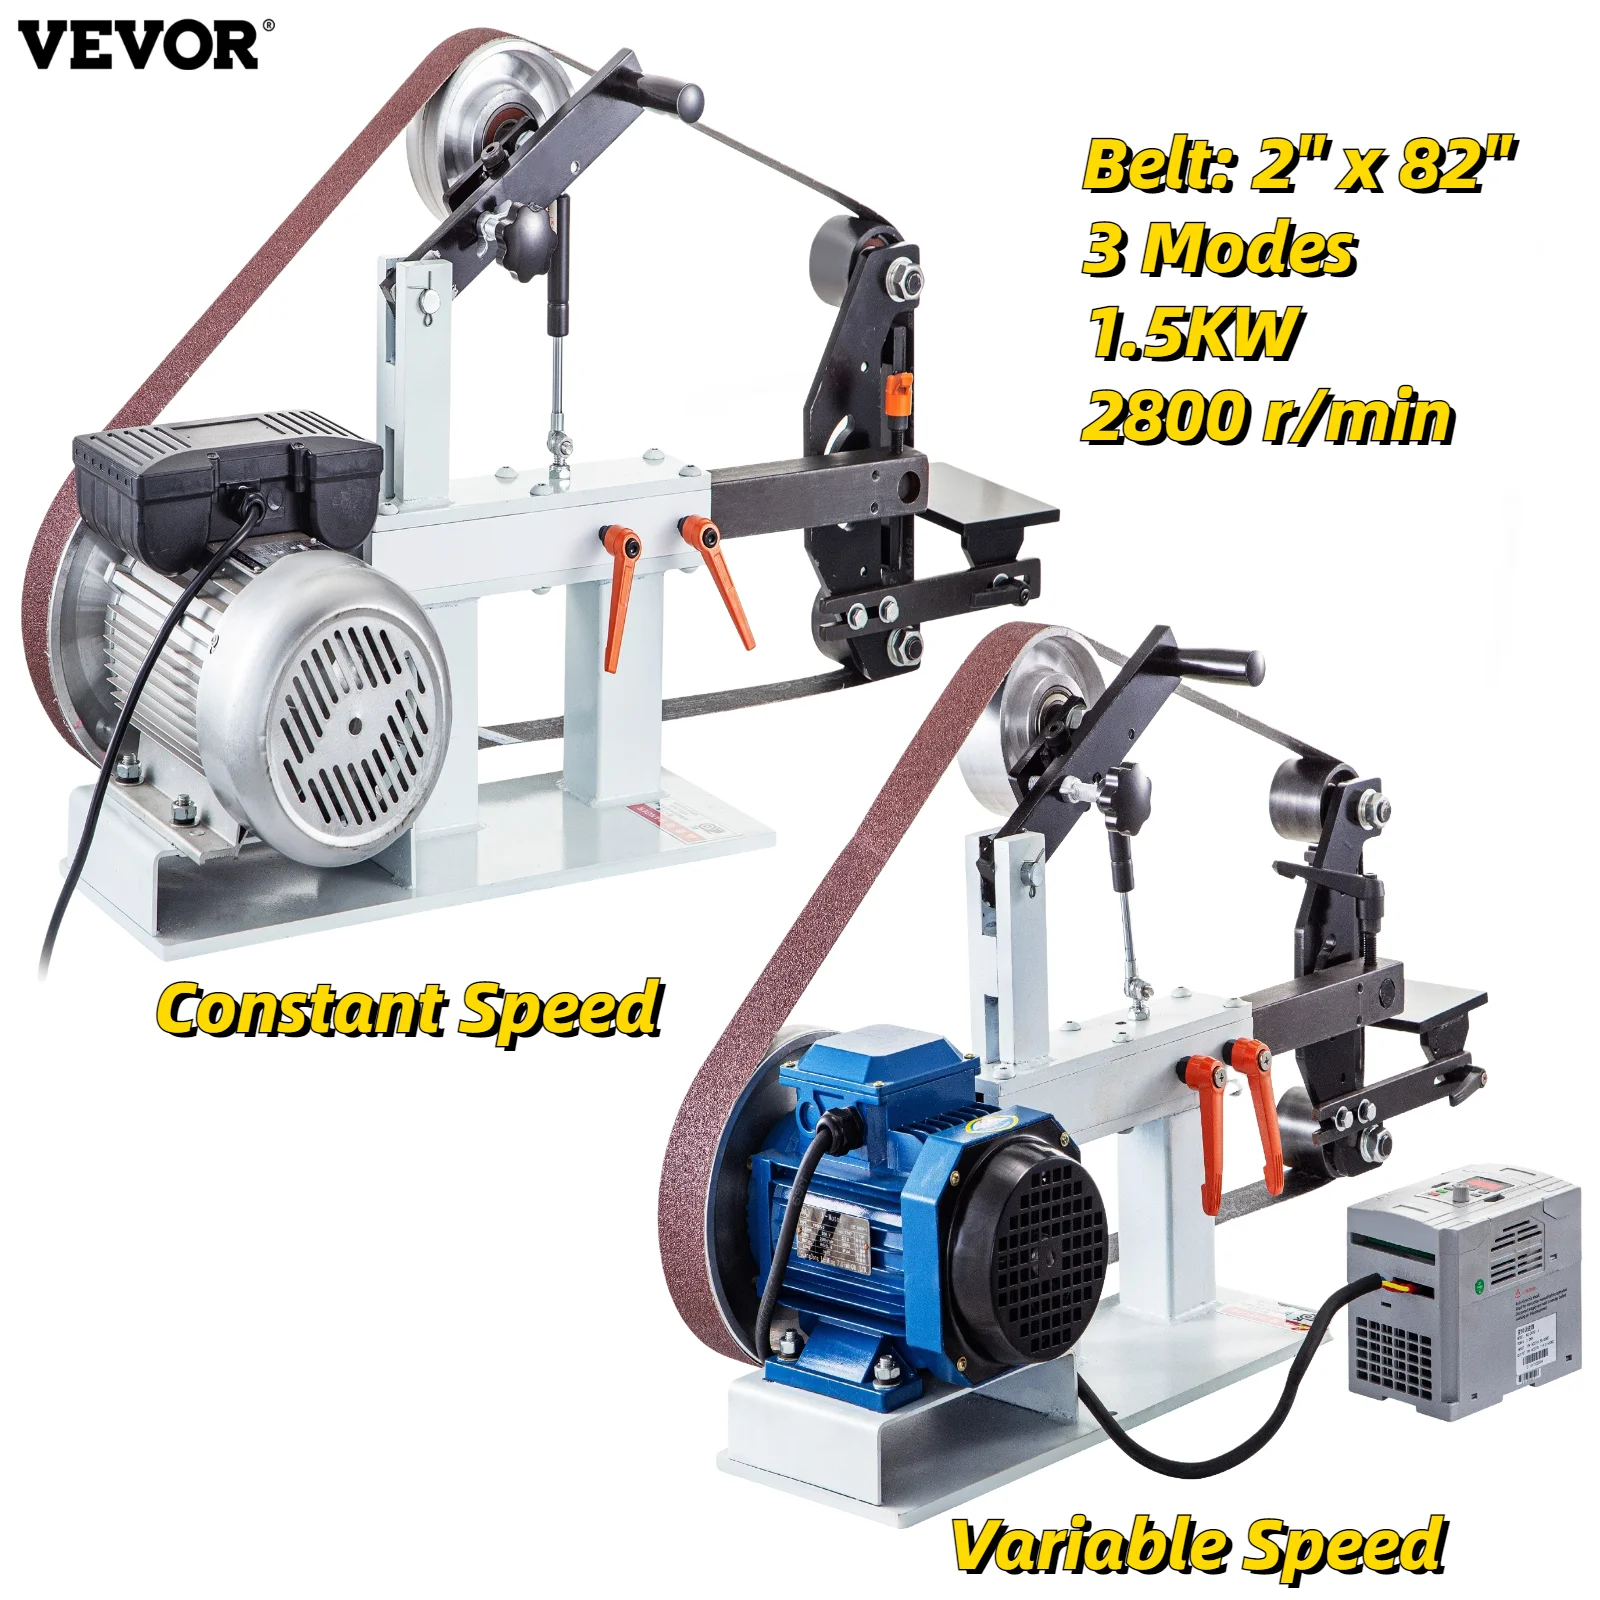 

Электрическая ленточная шлифовальная машина VEVOR, 1,5 кВт, 2x82 дюйма, переменная/постоянная скорость, 3 режима, для полировки ножей